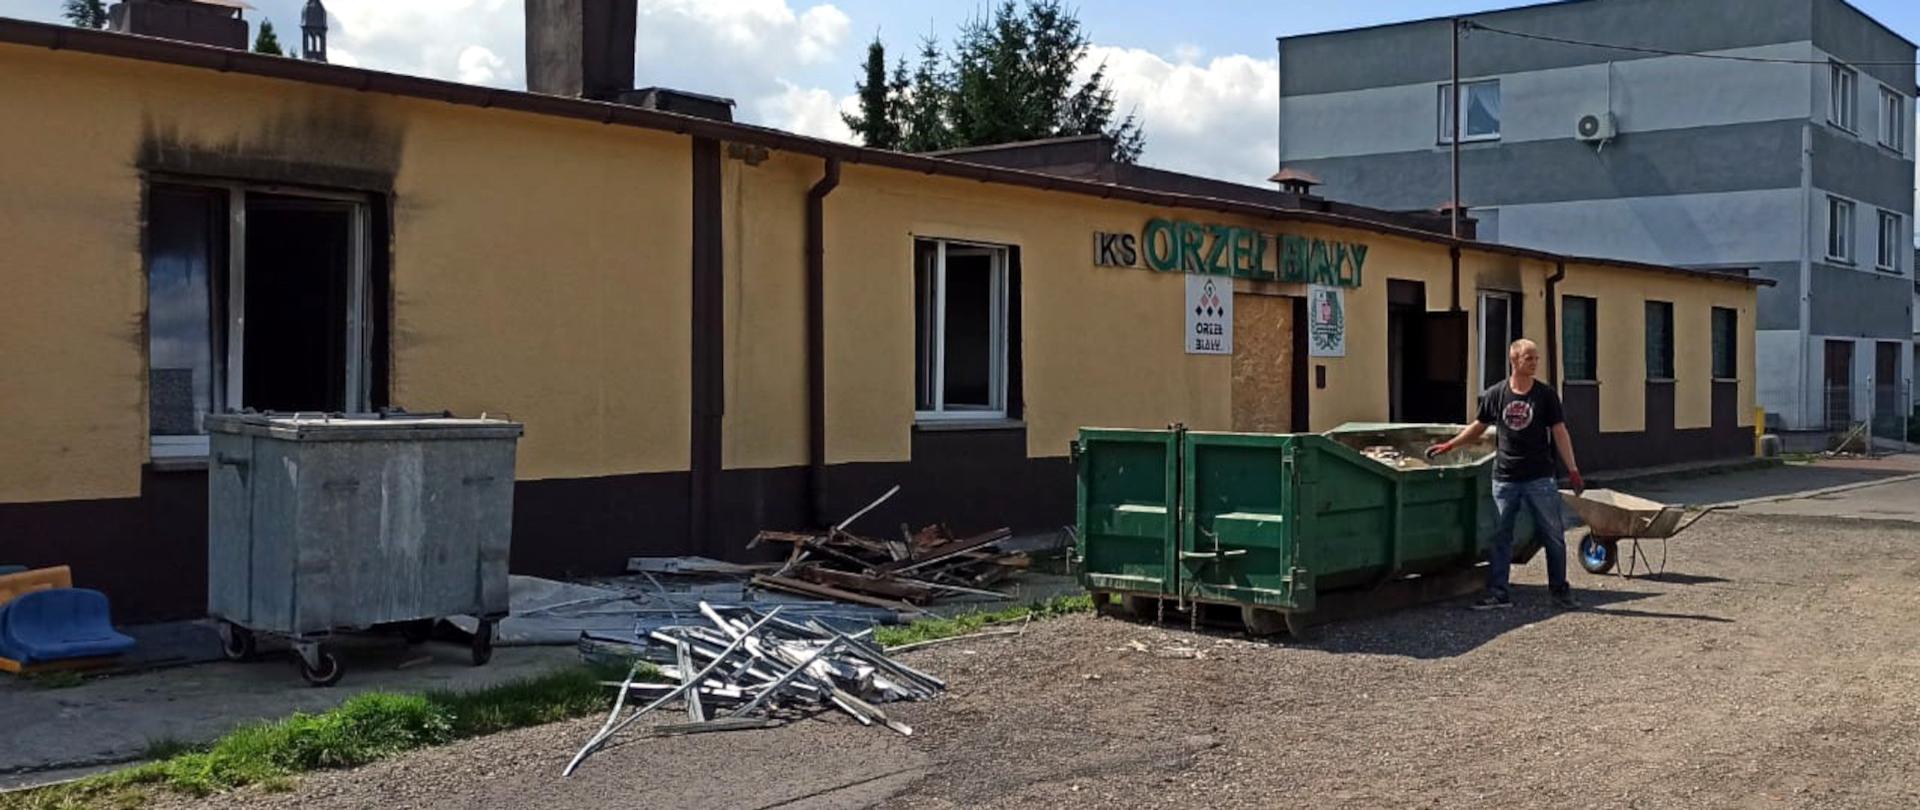 Zdjęcie przedstawia częściowo zniszczoną elewację budynku administracyjnego klubu sportowego Orzeł Biały. Przed budynkiem widać kontenery na gruz.